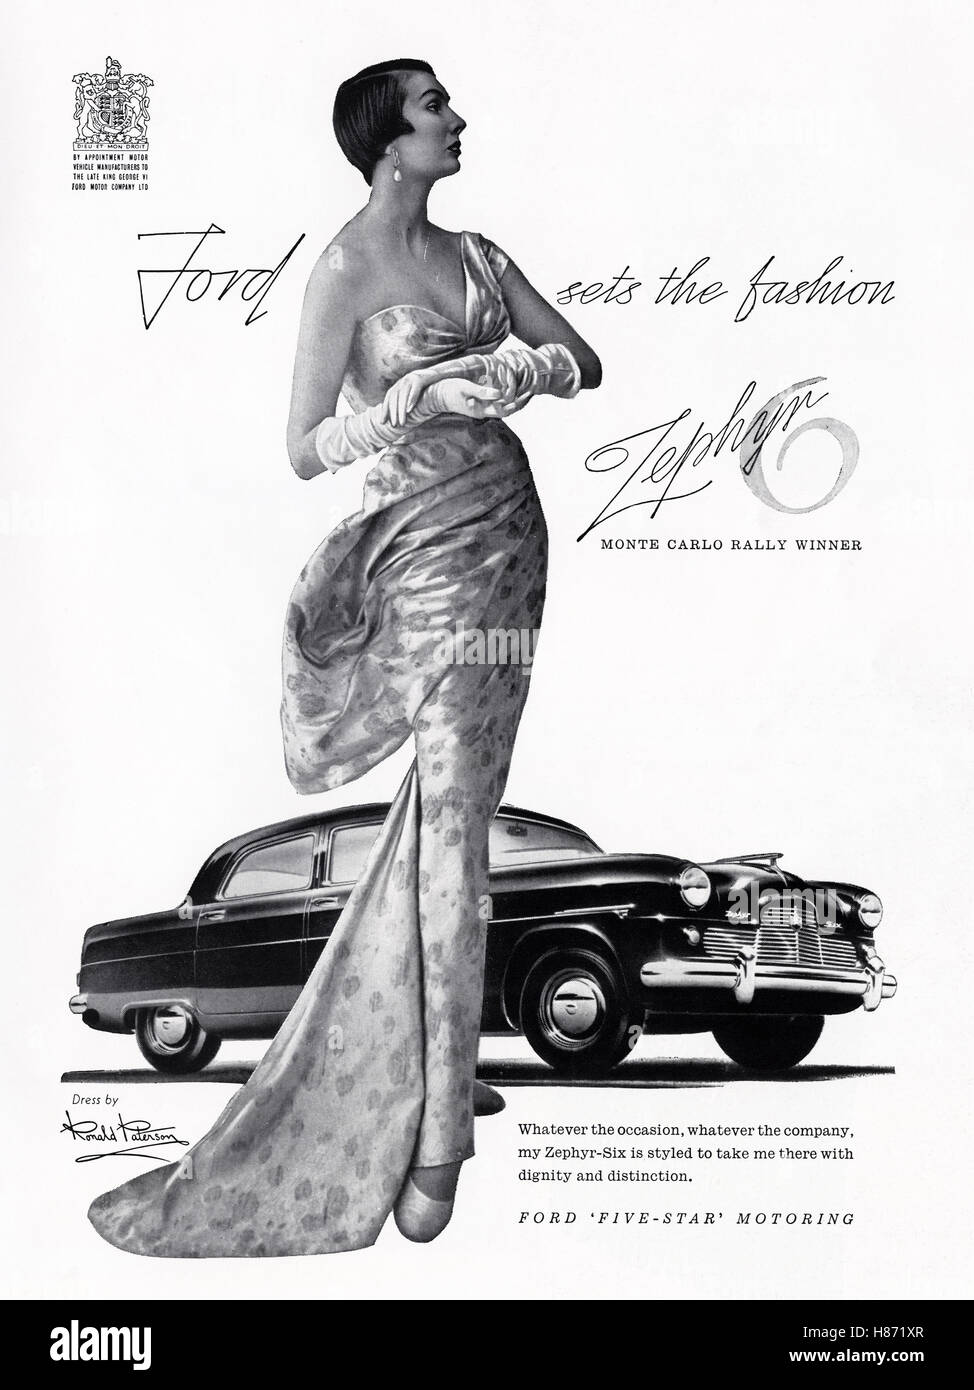 1950 Werbung Werbung von original alten Vintage 50s englische Magazin datiert 1953 Werbung für Ford Zephyr 6 durch königliche Ernennung Stockfoto